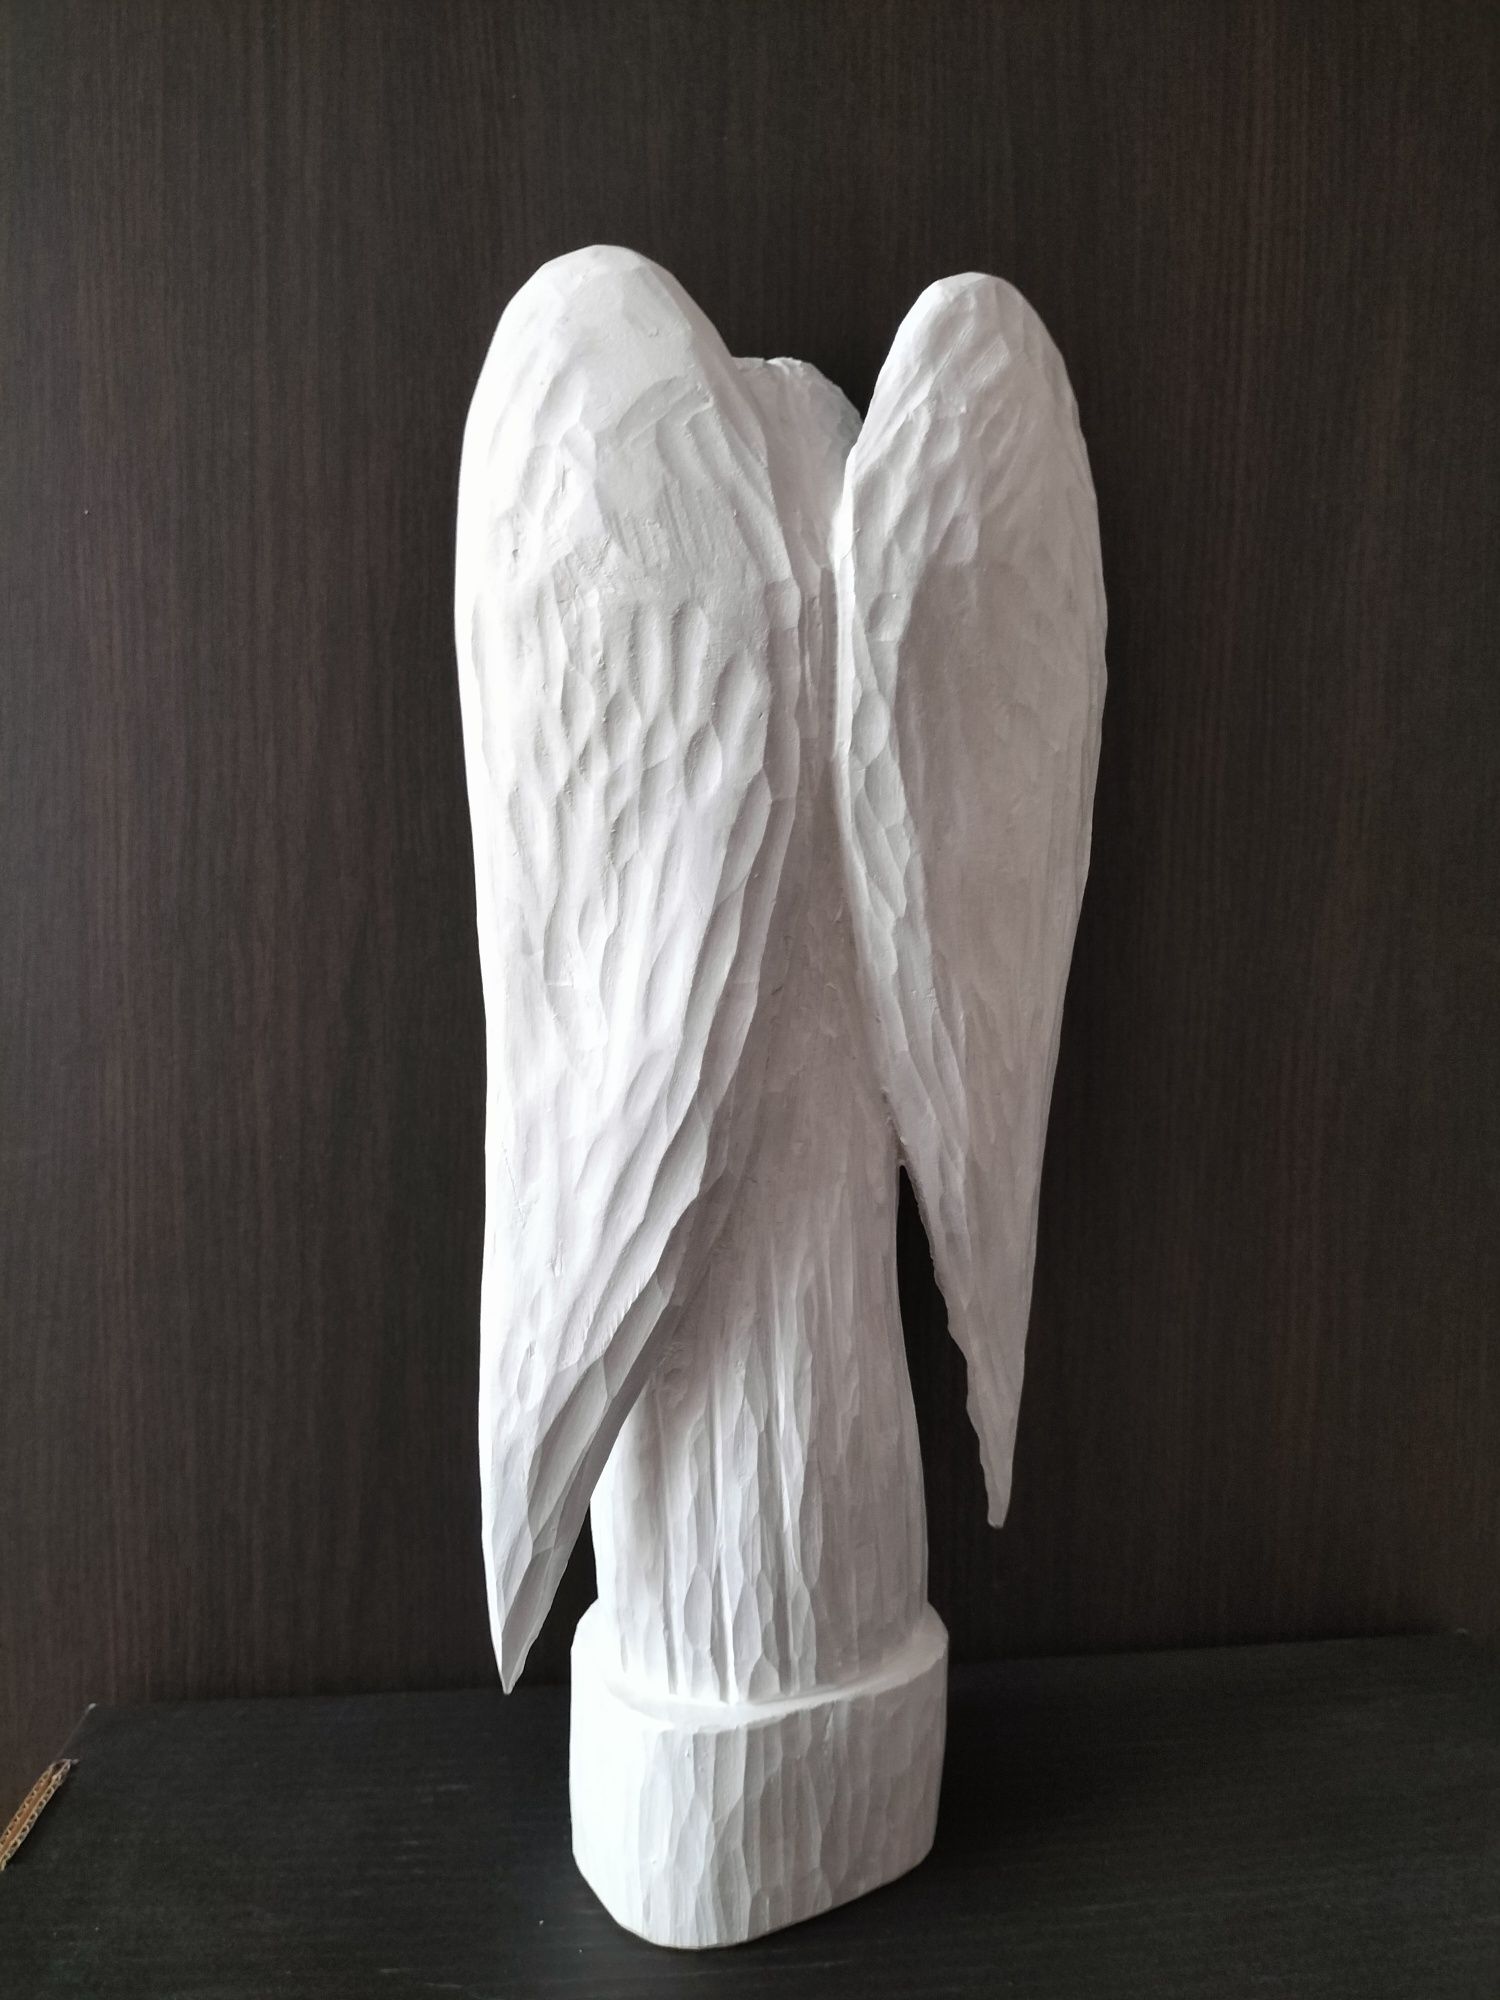 Anioł Pański - rzeźba w drewnie